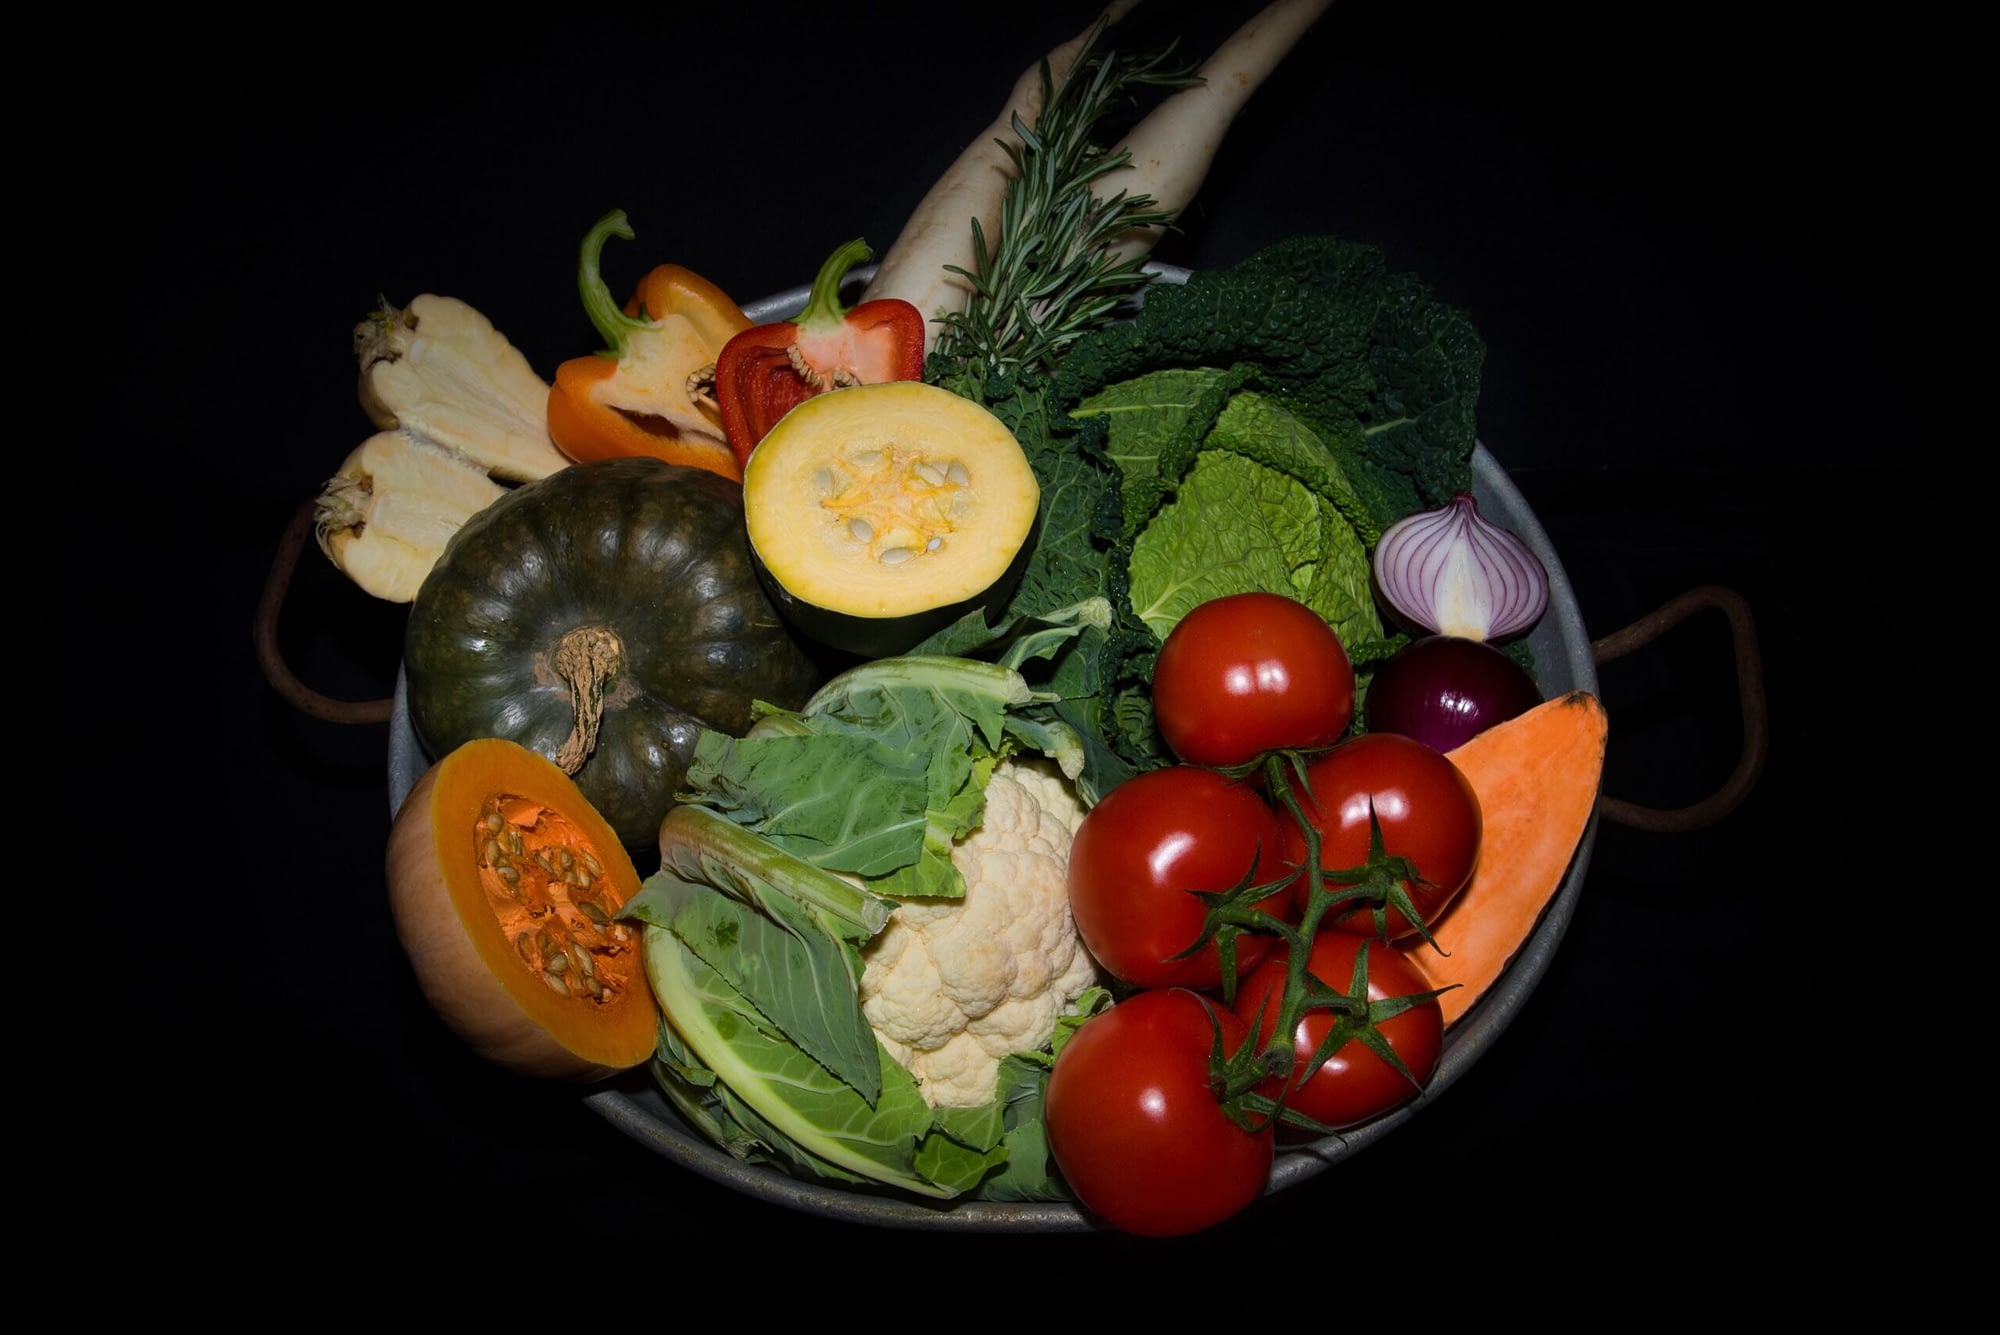 Seasonal fruit and vegetables